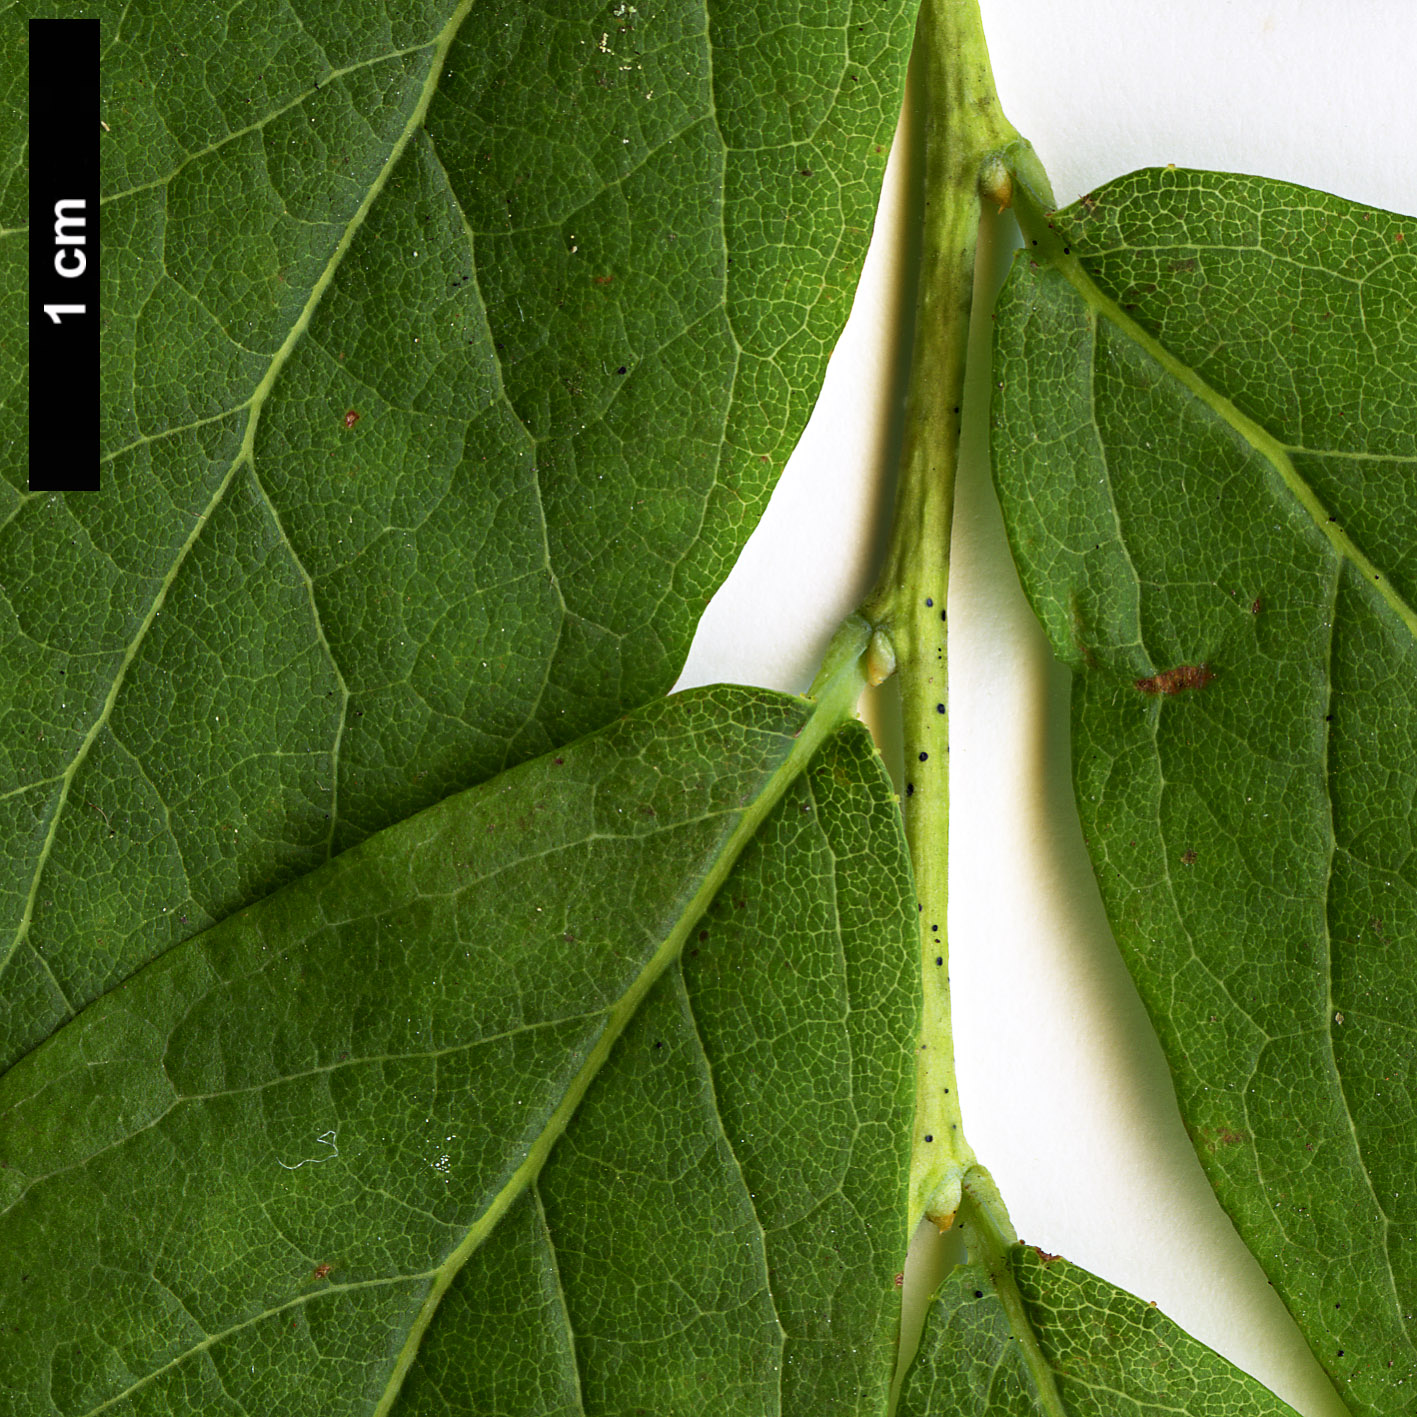 High resolution image: Family: Ericaceae - Genus: Vaccinium - Taxon: stamineum